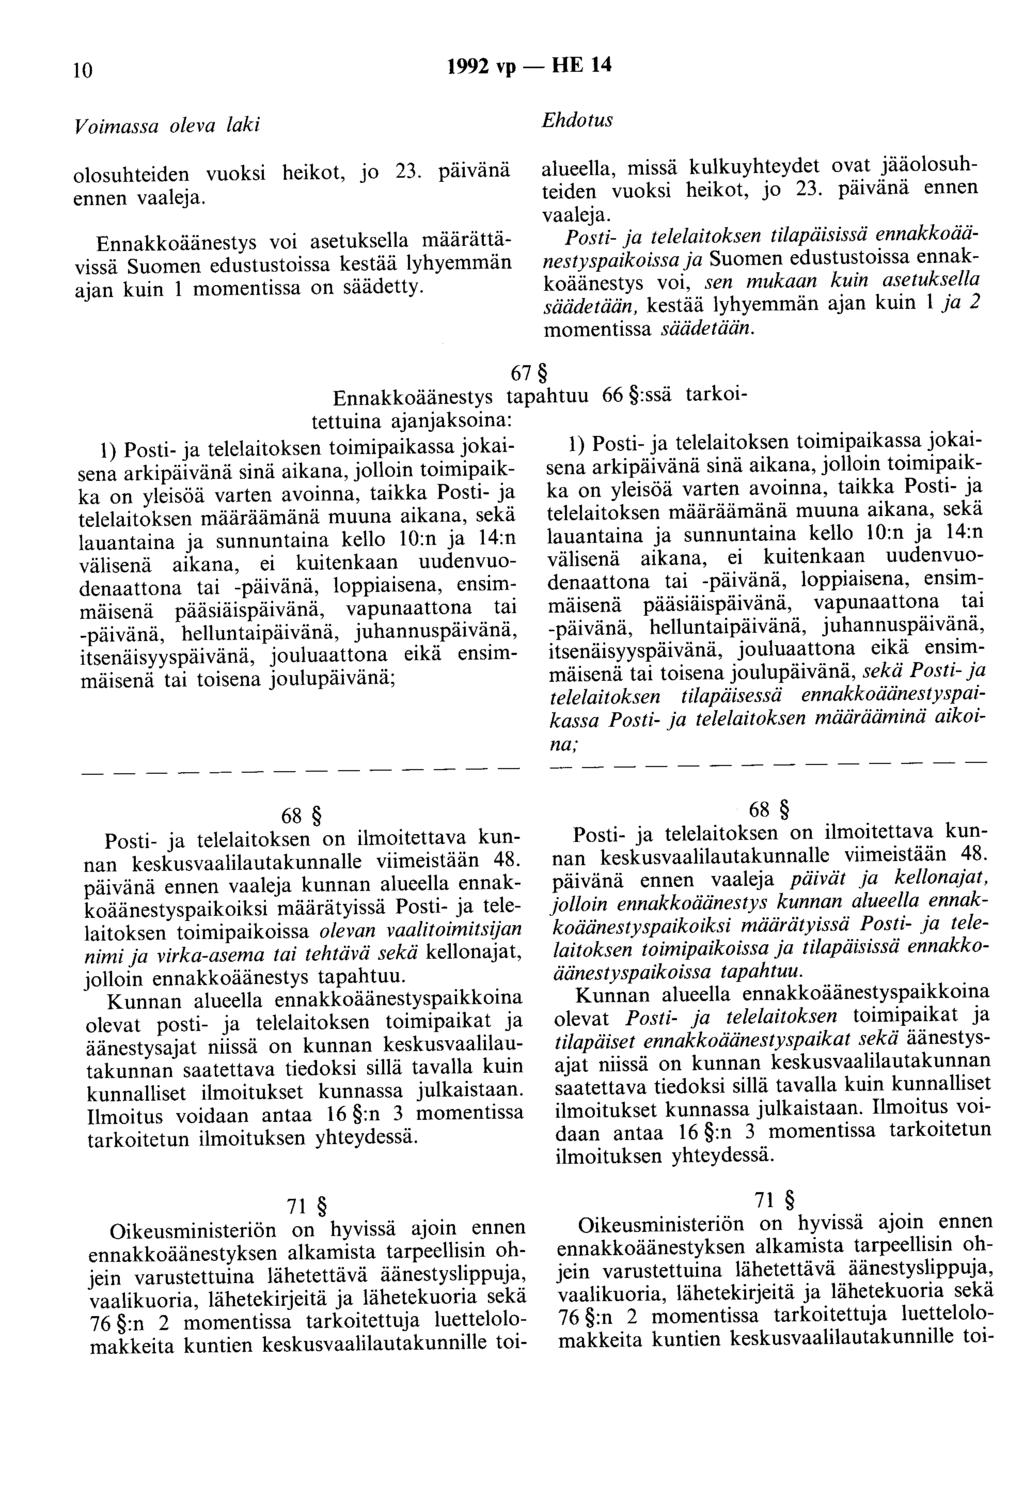 10 1992 vp - HE 14 Voimassa oleva laki Ehdotus olosuhteiden vuoksi heikot, jo 23. päivänä ennen vaaleja.